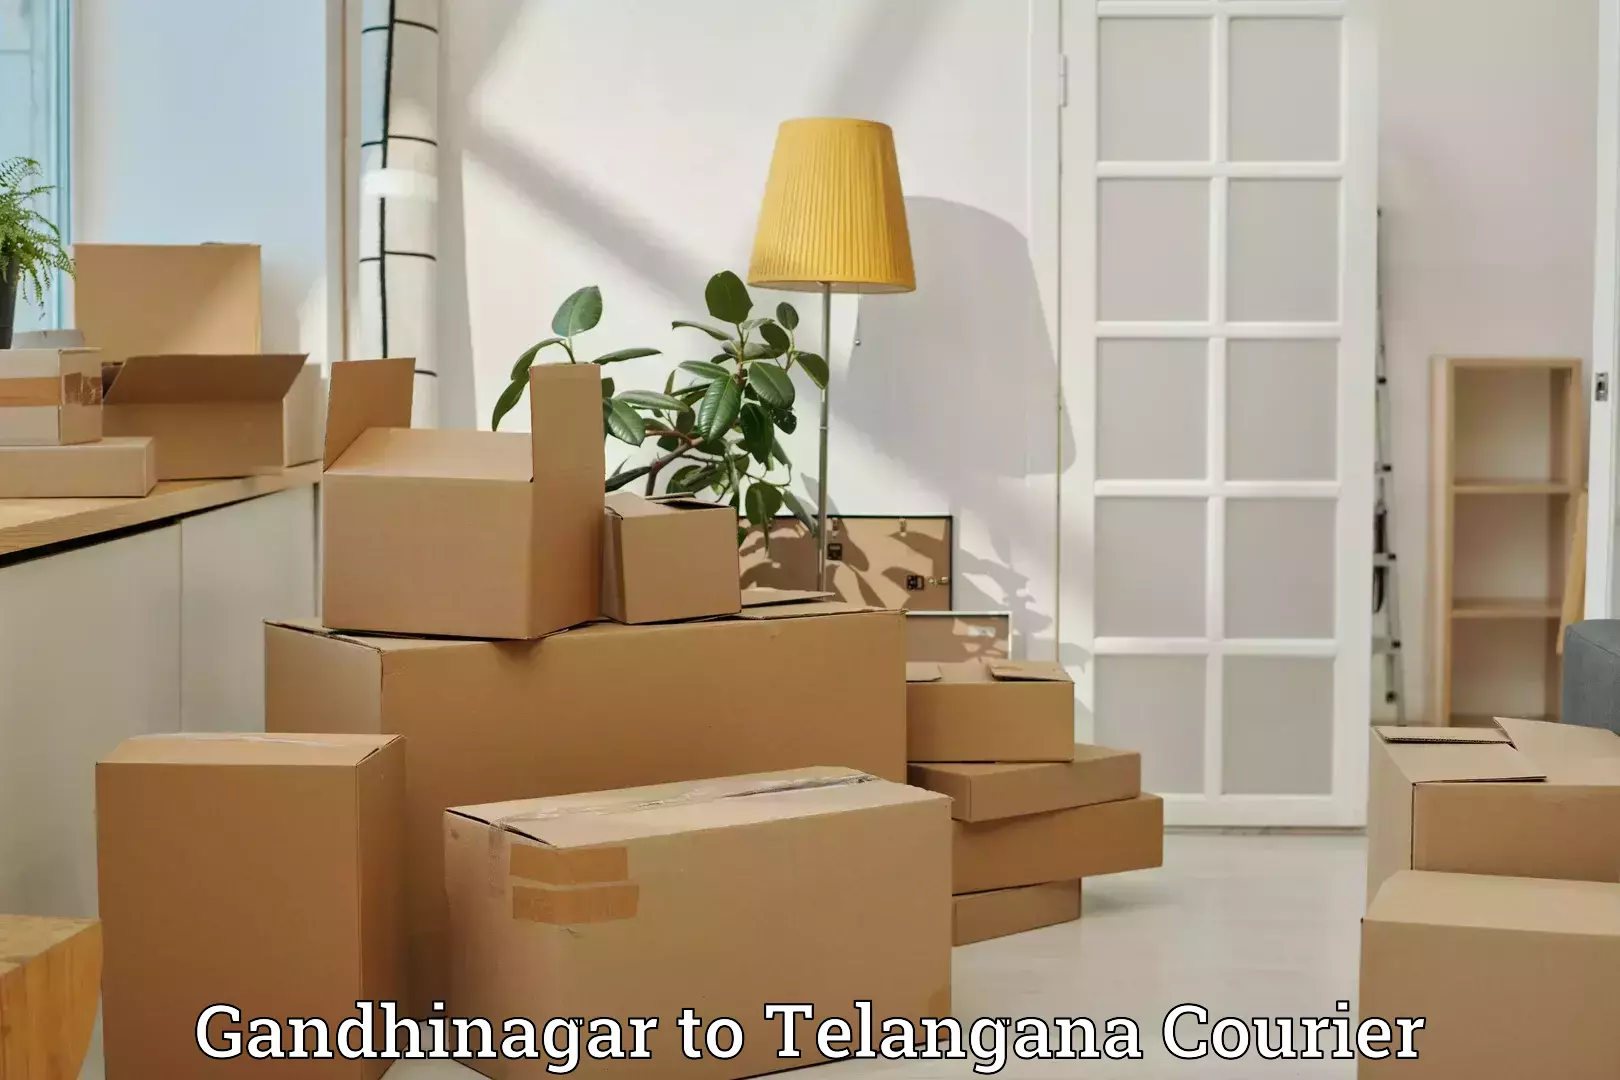 Personal effects shipping in Gandhinagar to Sadashivpet